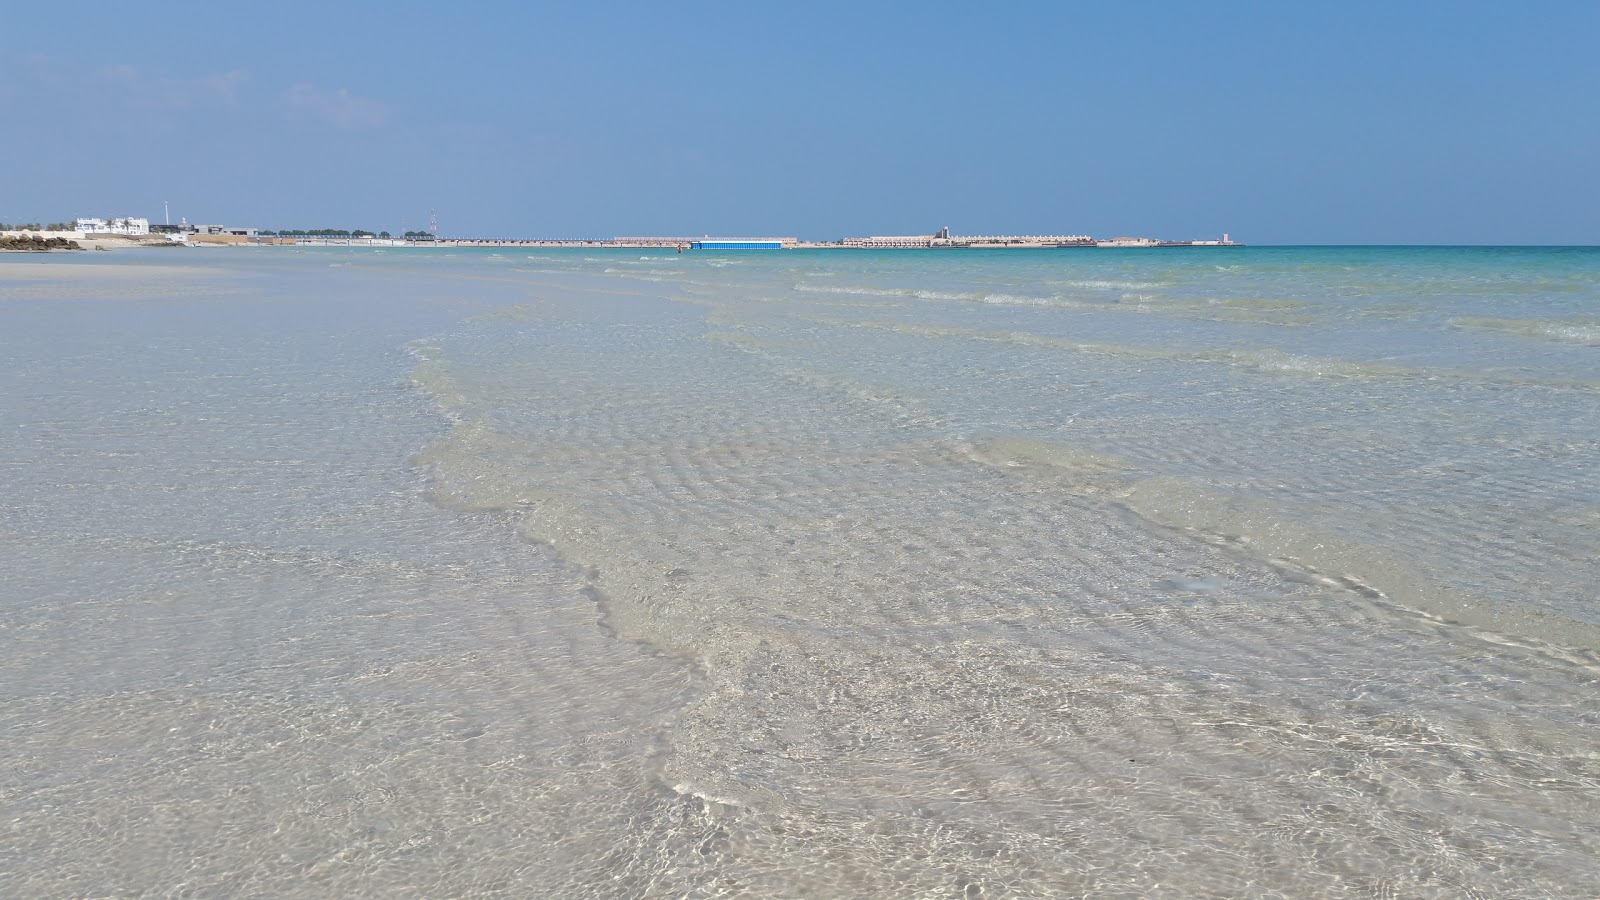 Al Jassasiya Beach, Qatar